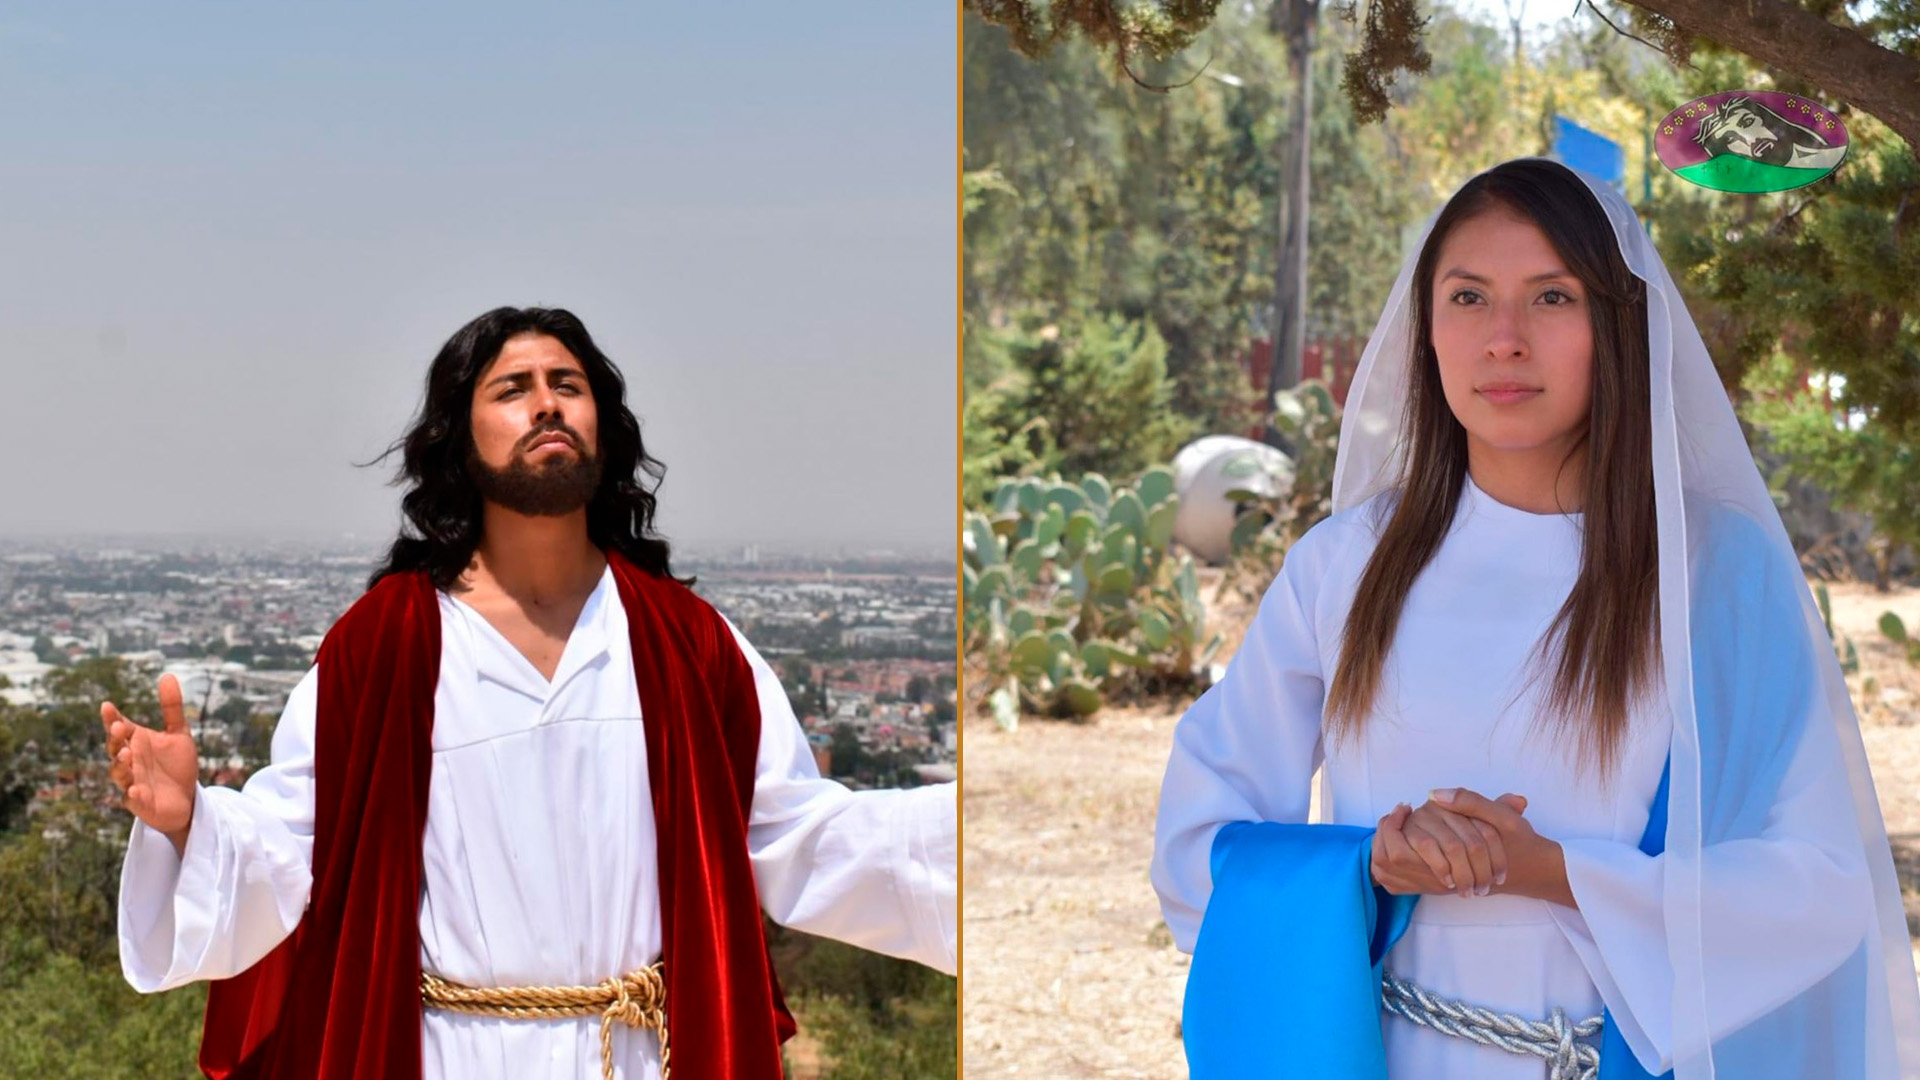 Tu personaje lo sientes, lo vives y lo manifiestas”: cómo se alistan “Jesús  y María” para la Pasión de Cristo en Iztapalapa - Infobae